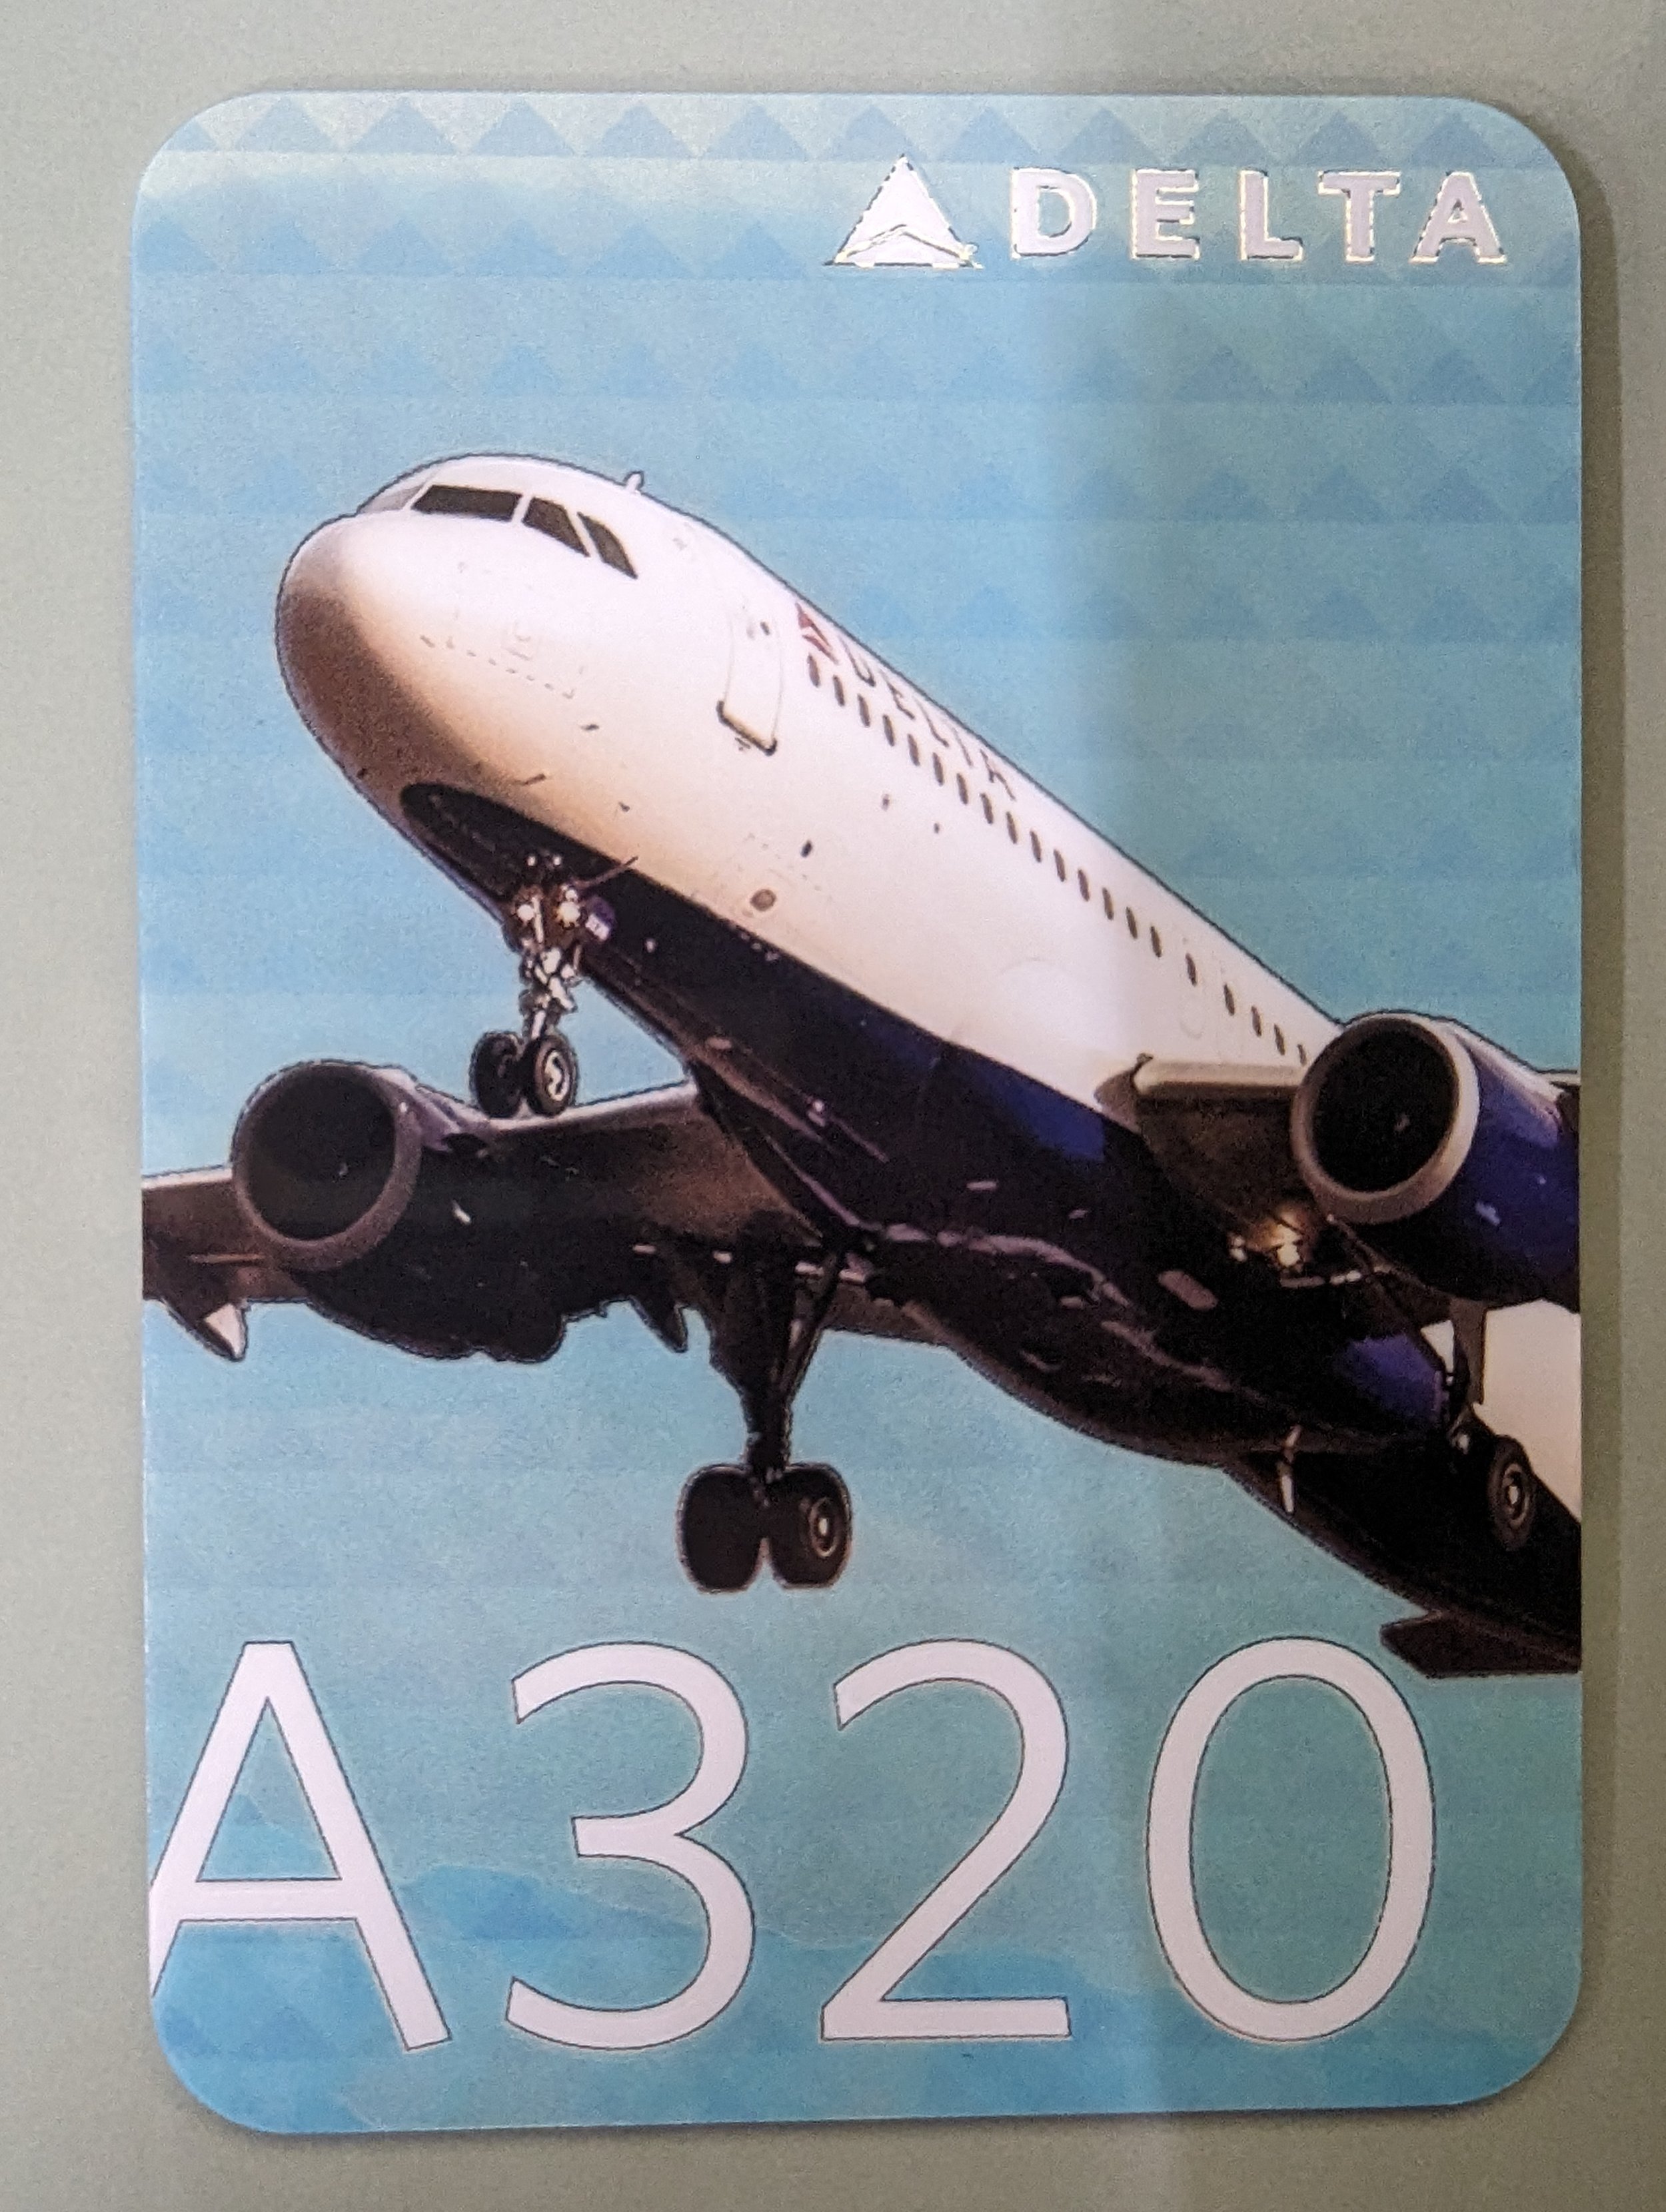 2016 Card #46 A320